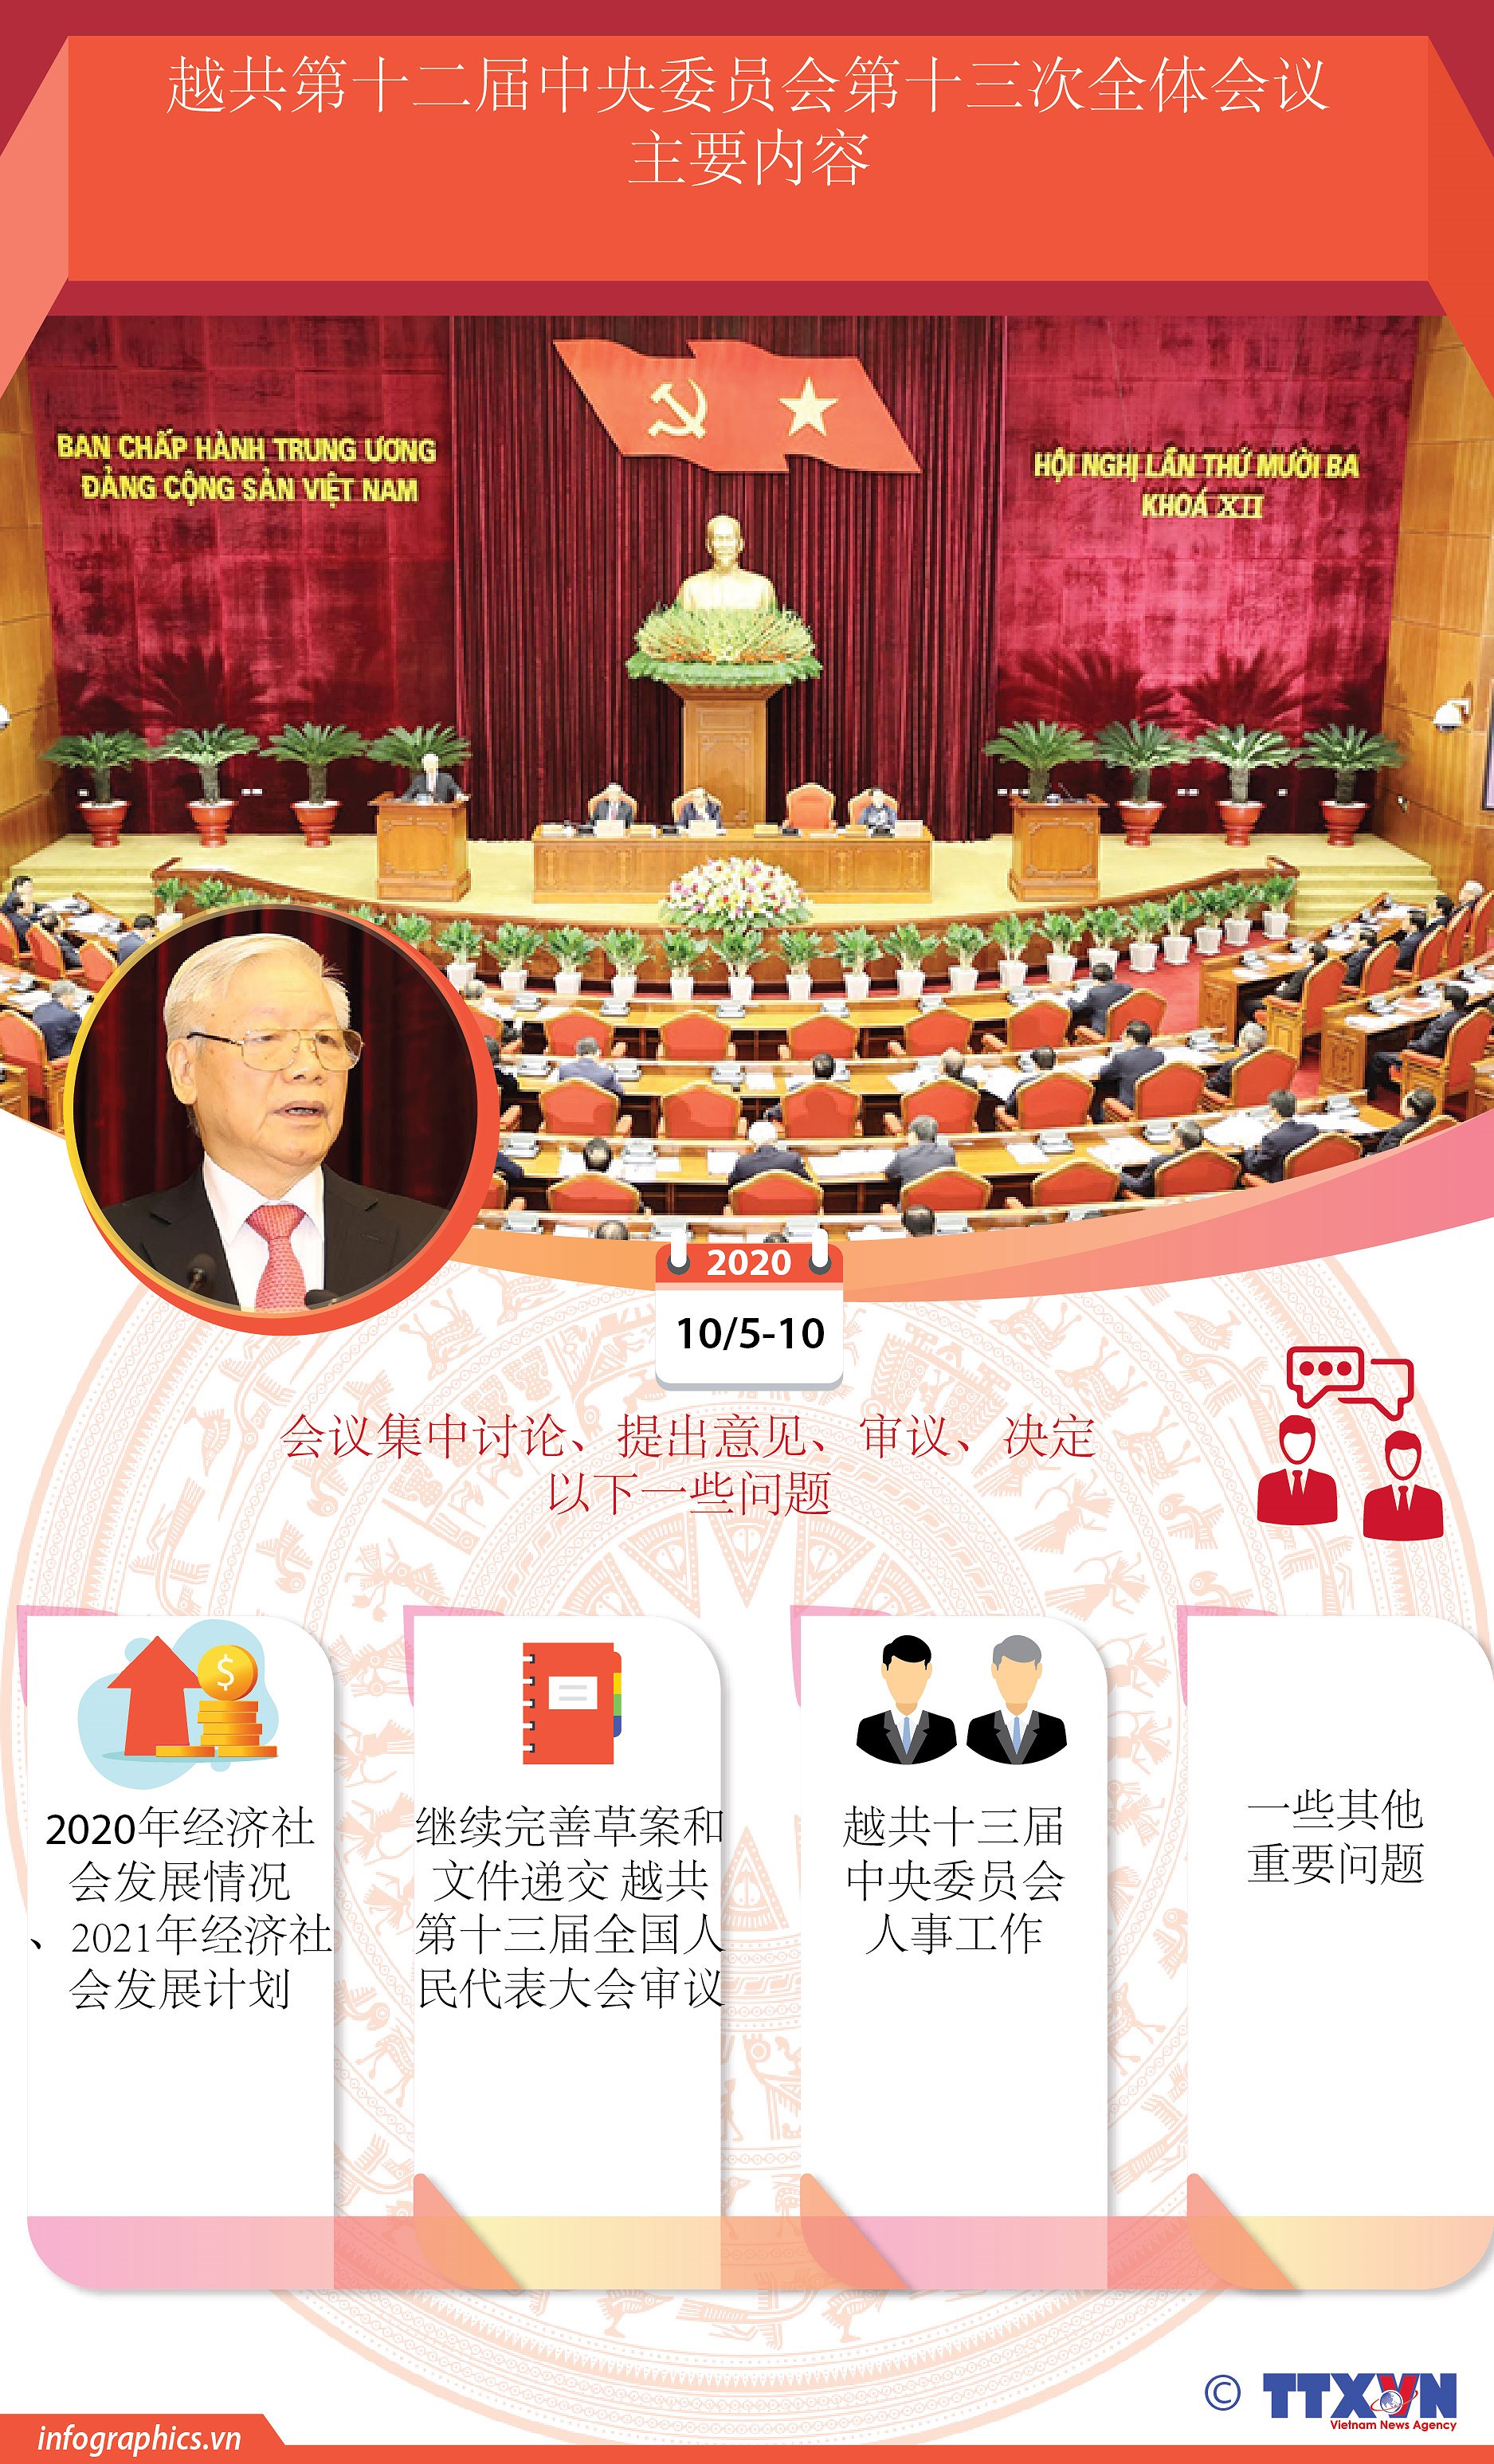 图表新闻：越共第十二届中央委员会第十三次全体会议主要内容 hinh anh 1